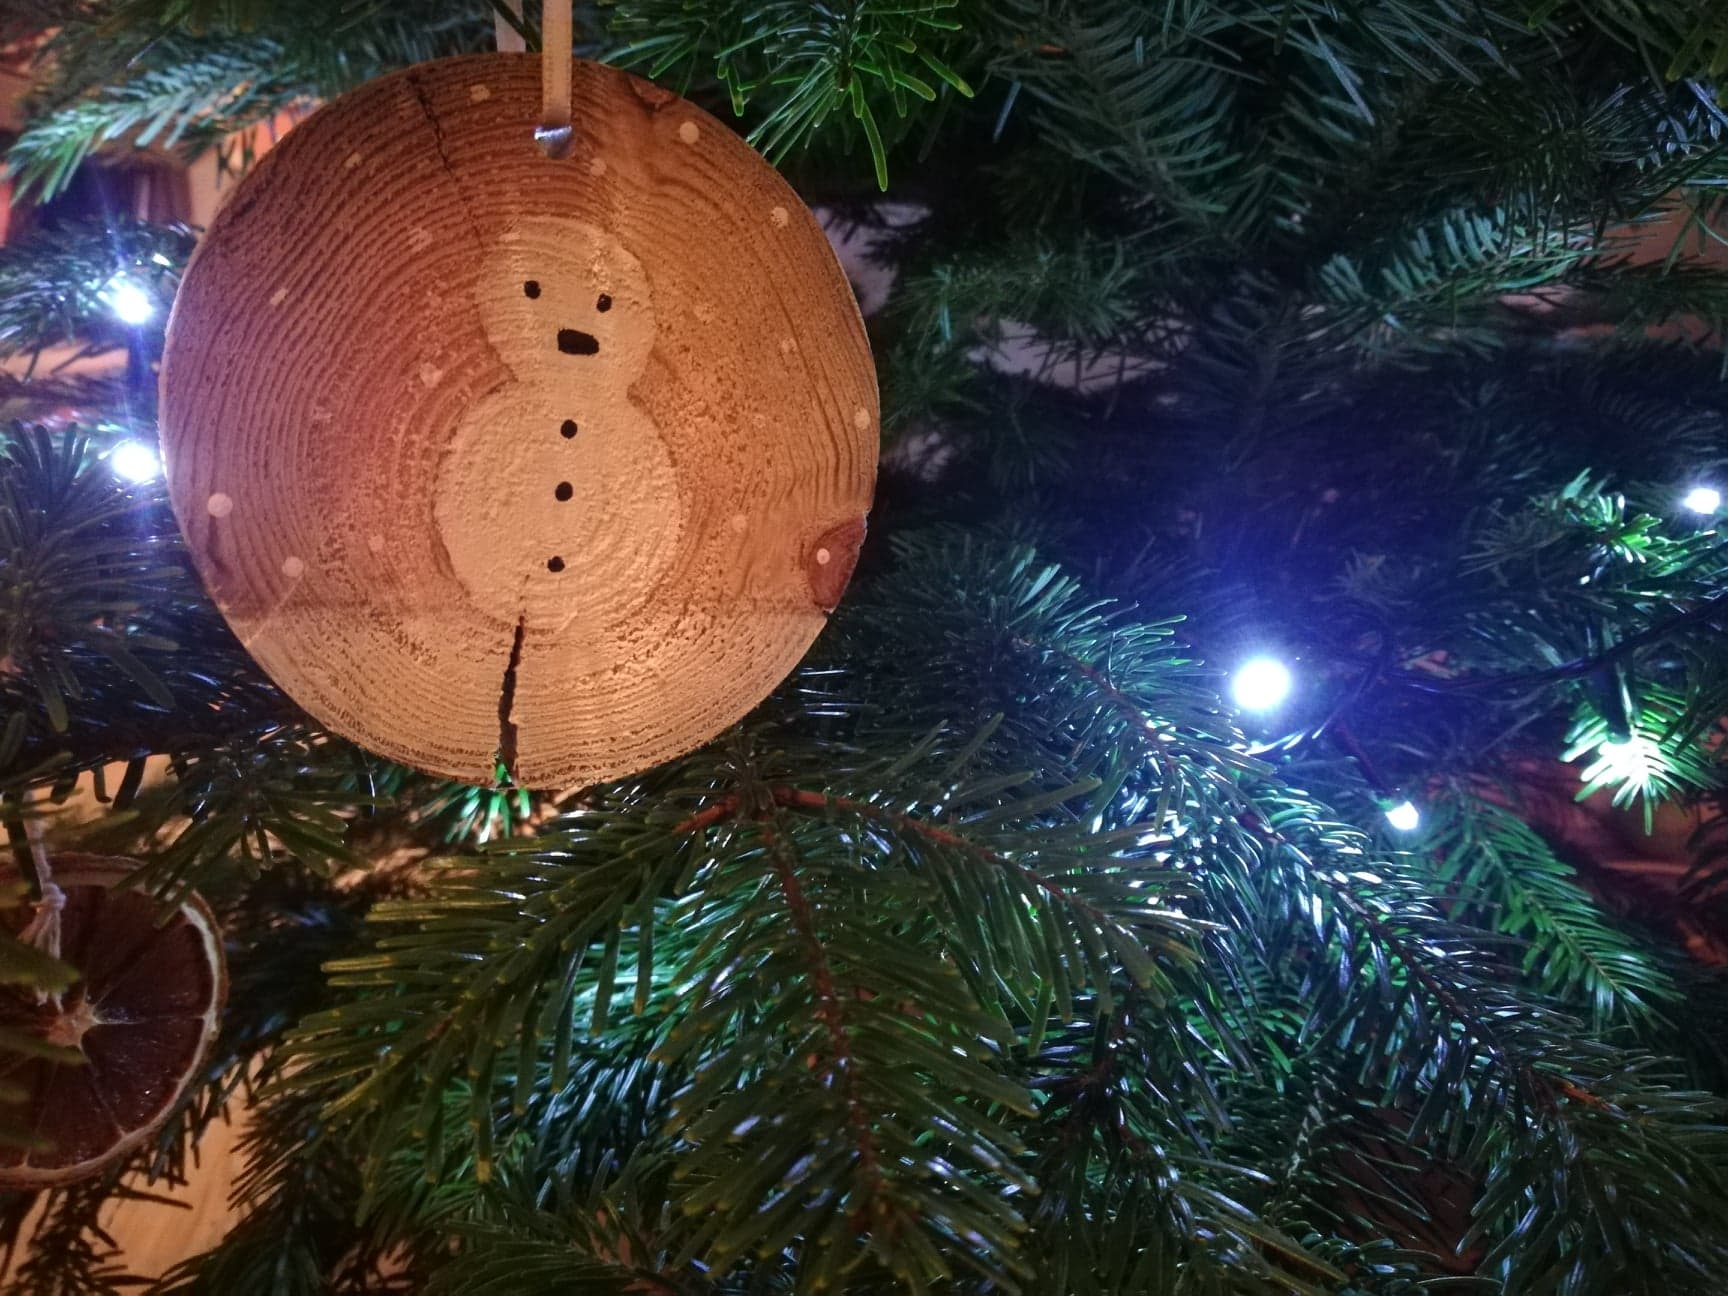 Entre les branches du sapin, une décoration faite main. Un bonhomme de neige peint sur une rondelle de bois.